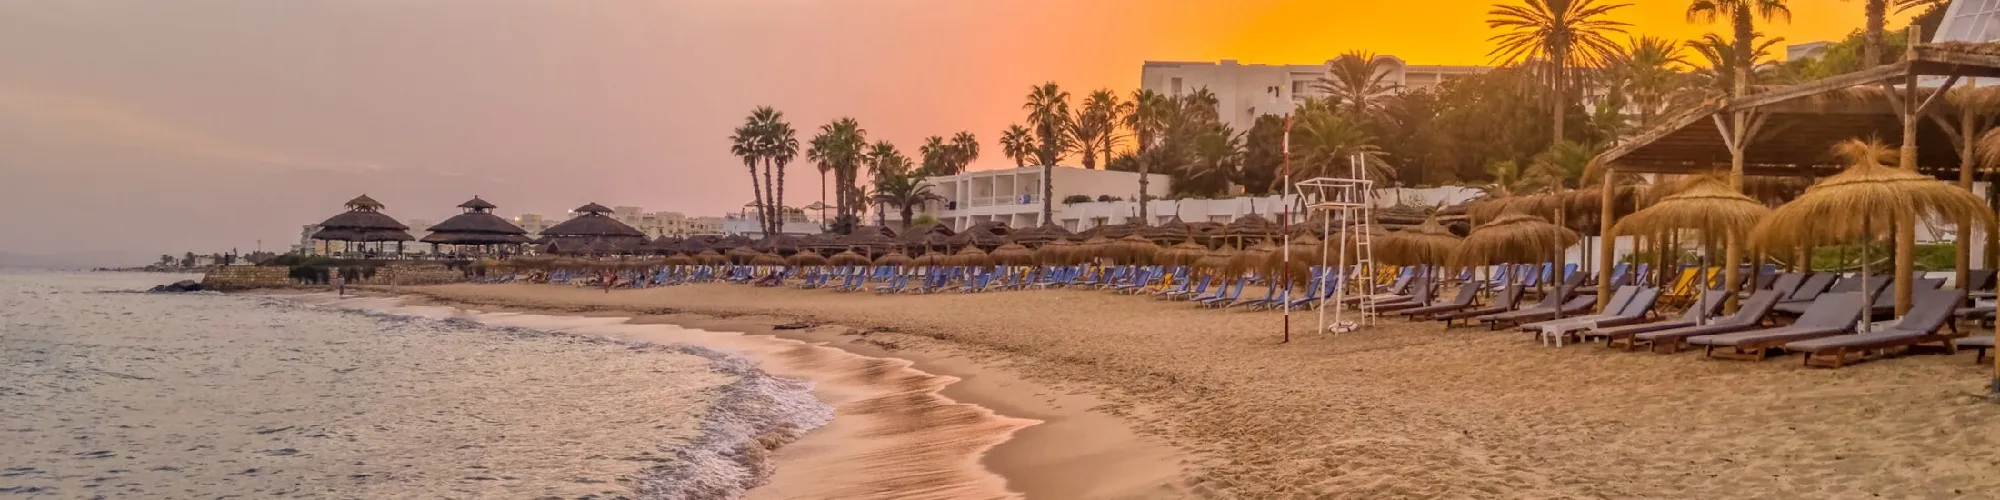  Urlaub in Tunesien  background image